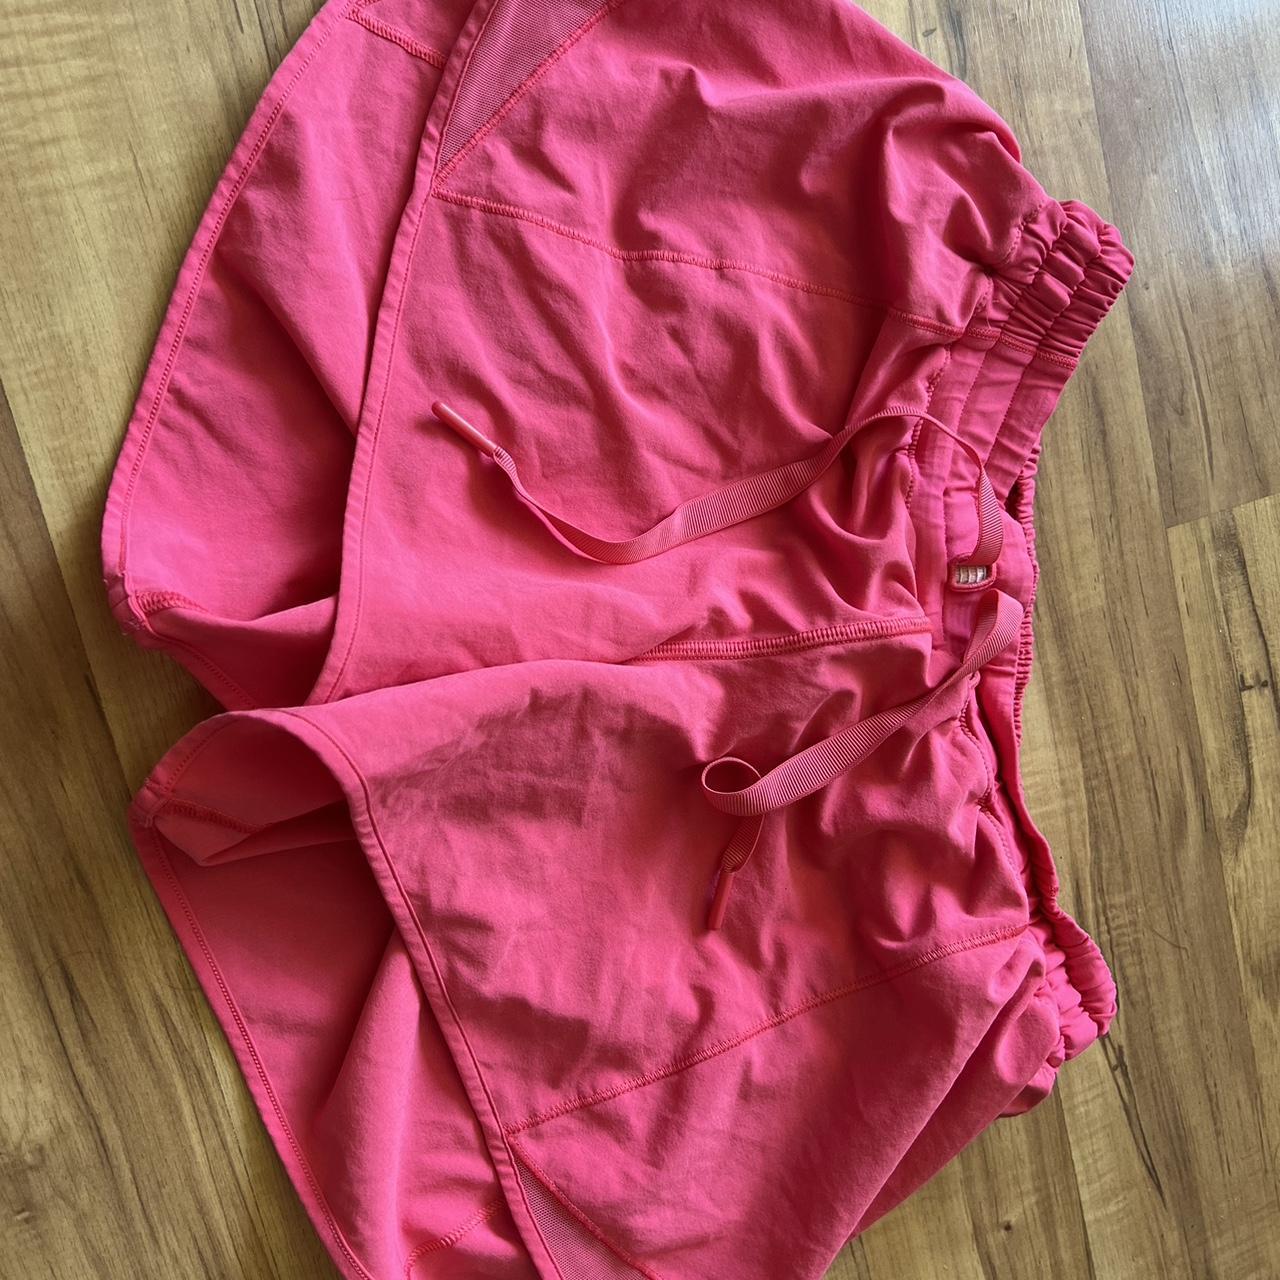 lululemon shorts #lululemon #pinkshorts #hottyhot - Depop